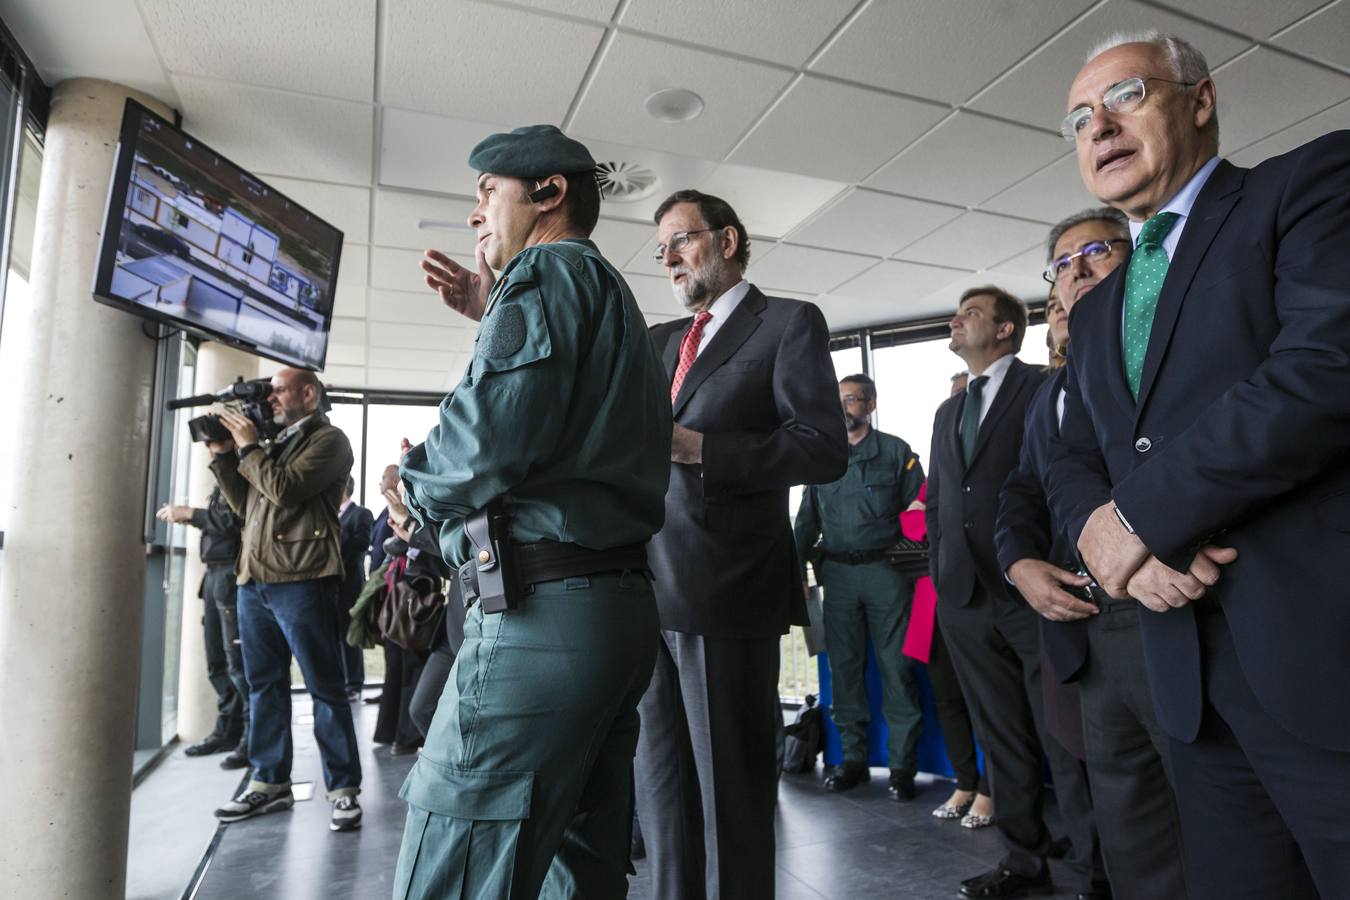 El presidente del Gobierno, Mariano Rajoy, ha presenciado un simulacro de una operación antiyihadista en el Polígono de Experiencias para Fuerzas Especiales de la Guardia Civil (PEFE), en Logroño, que ha inaugurado oficialmente junto al ministro de Interior, Juan Ignacio Zoido.